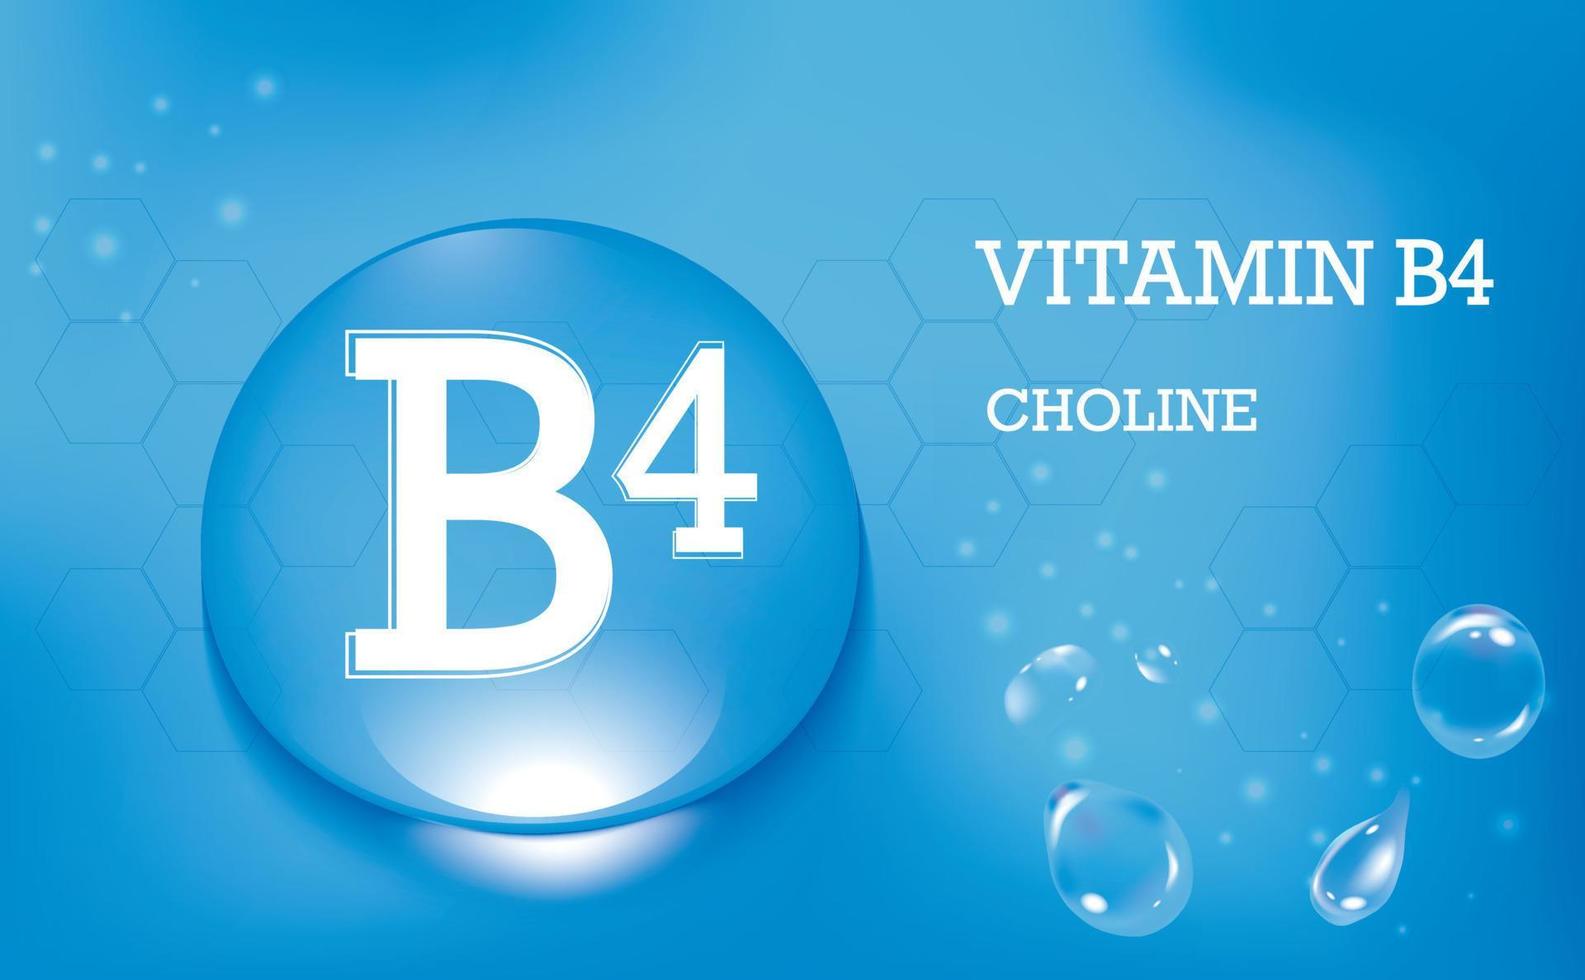 vitamine b4, choline. gouttes d'eau sur un fond dégradé bleu. complément alimentaire et mode de vie sain. affiche. illustration vectorielle vecteur